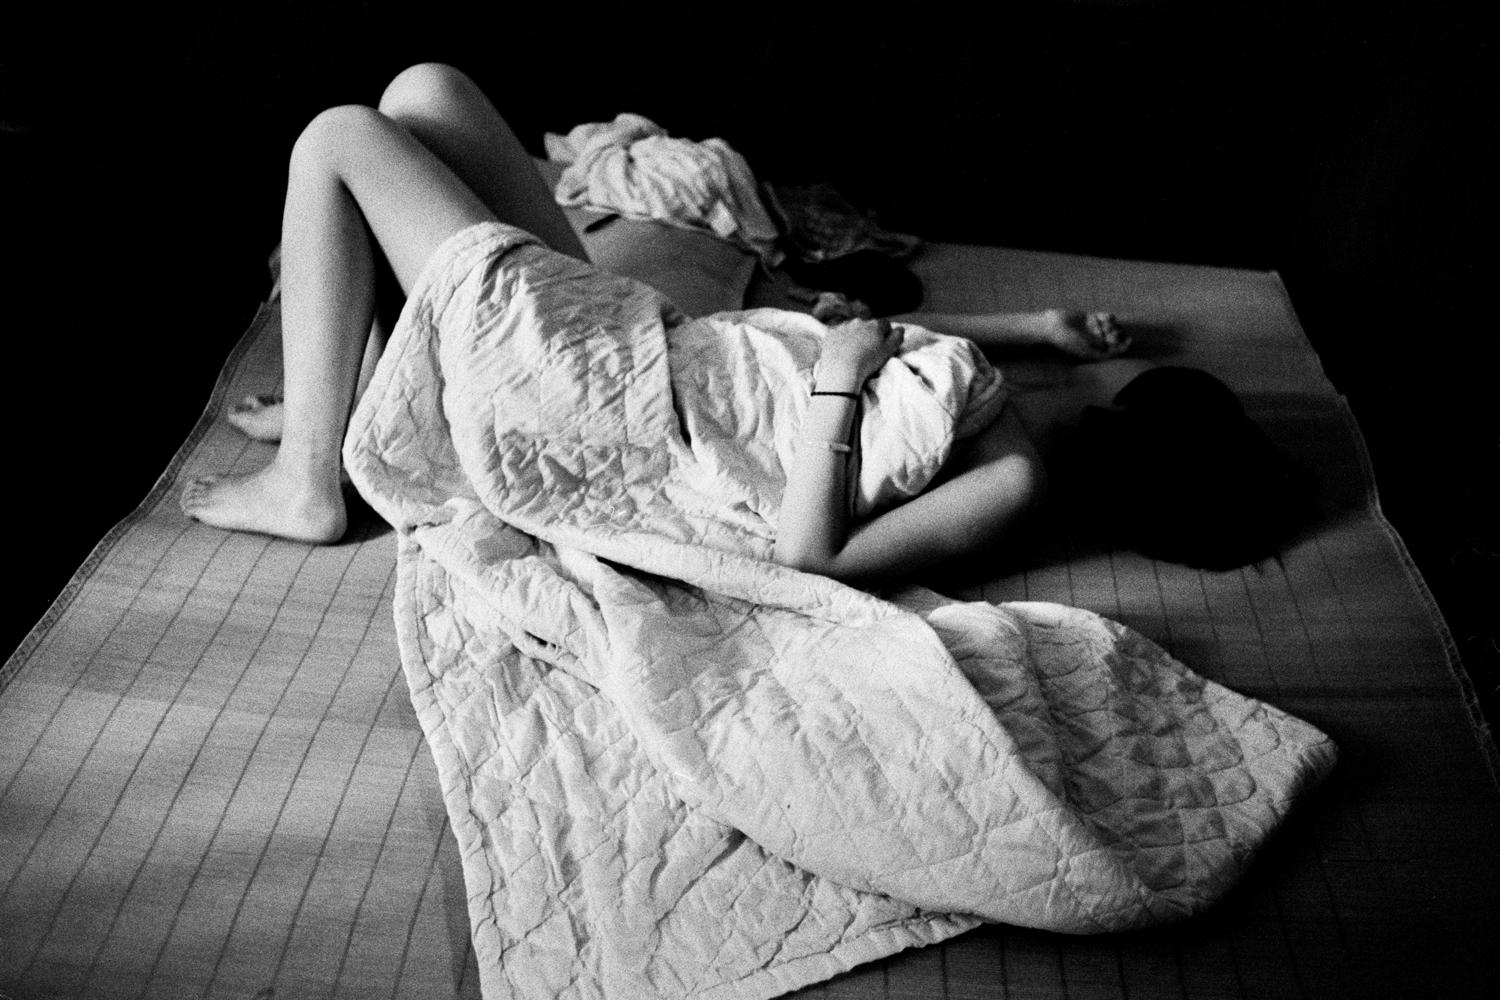 Girl in bed. 2011.